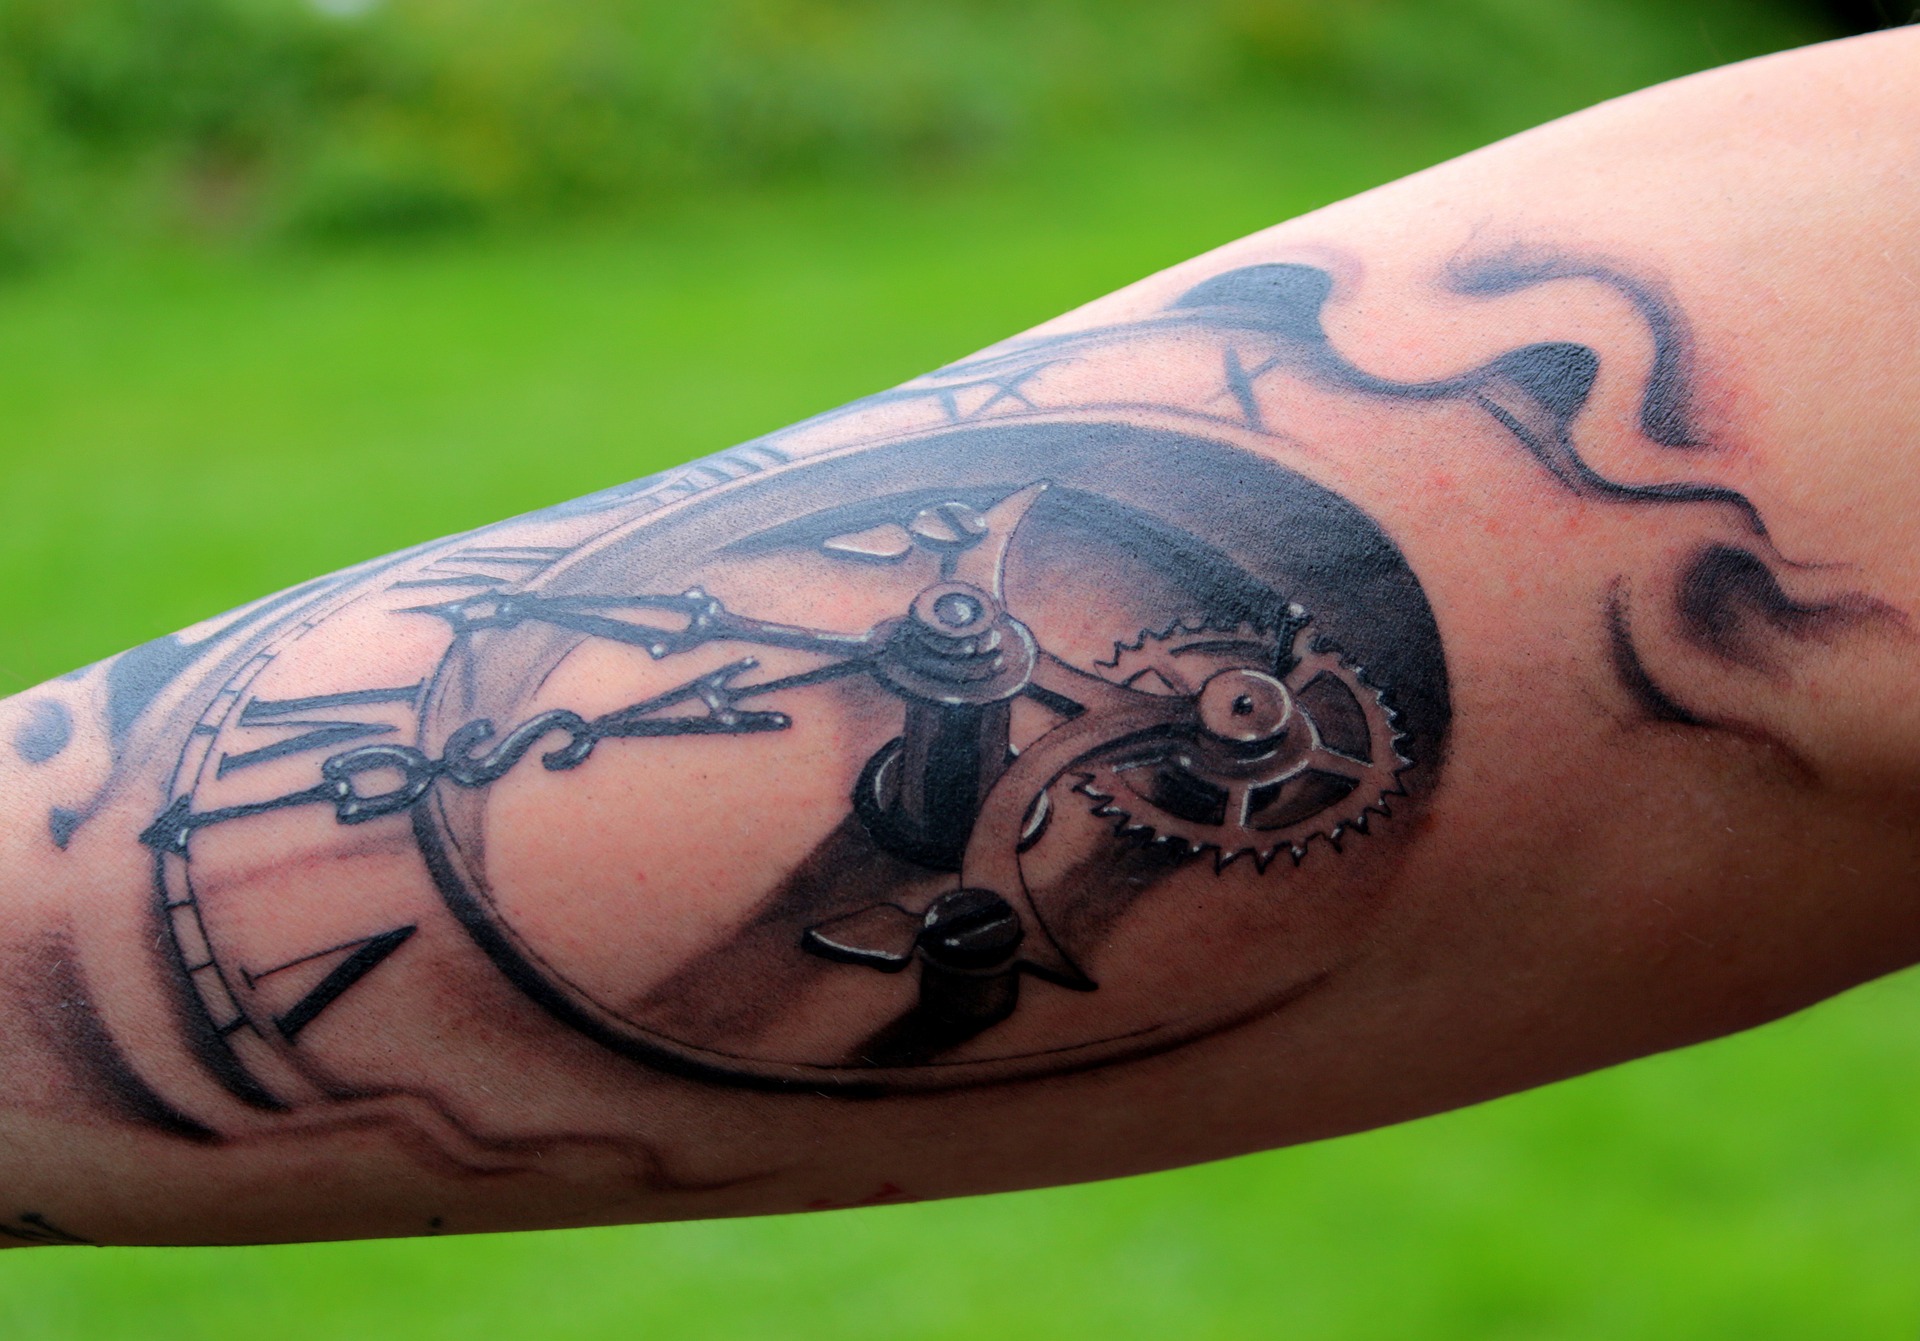 5. Lion Forearm Sleeve Tattoo Sleeve - wide 1